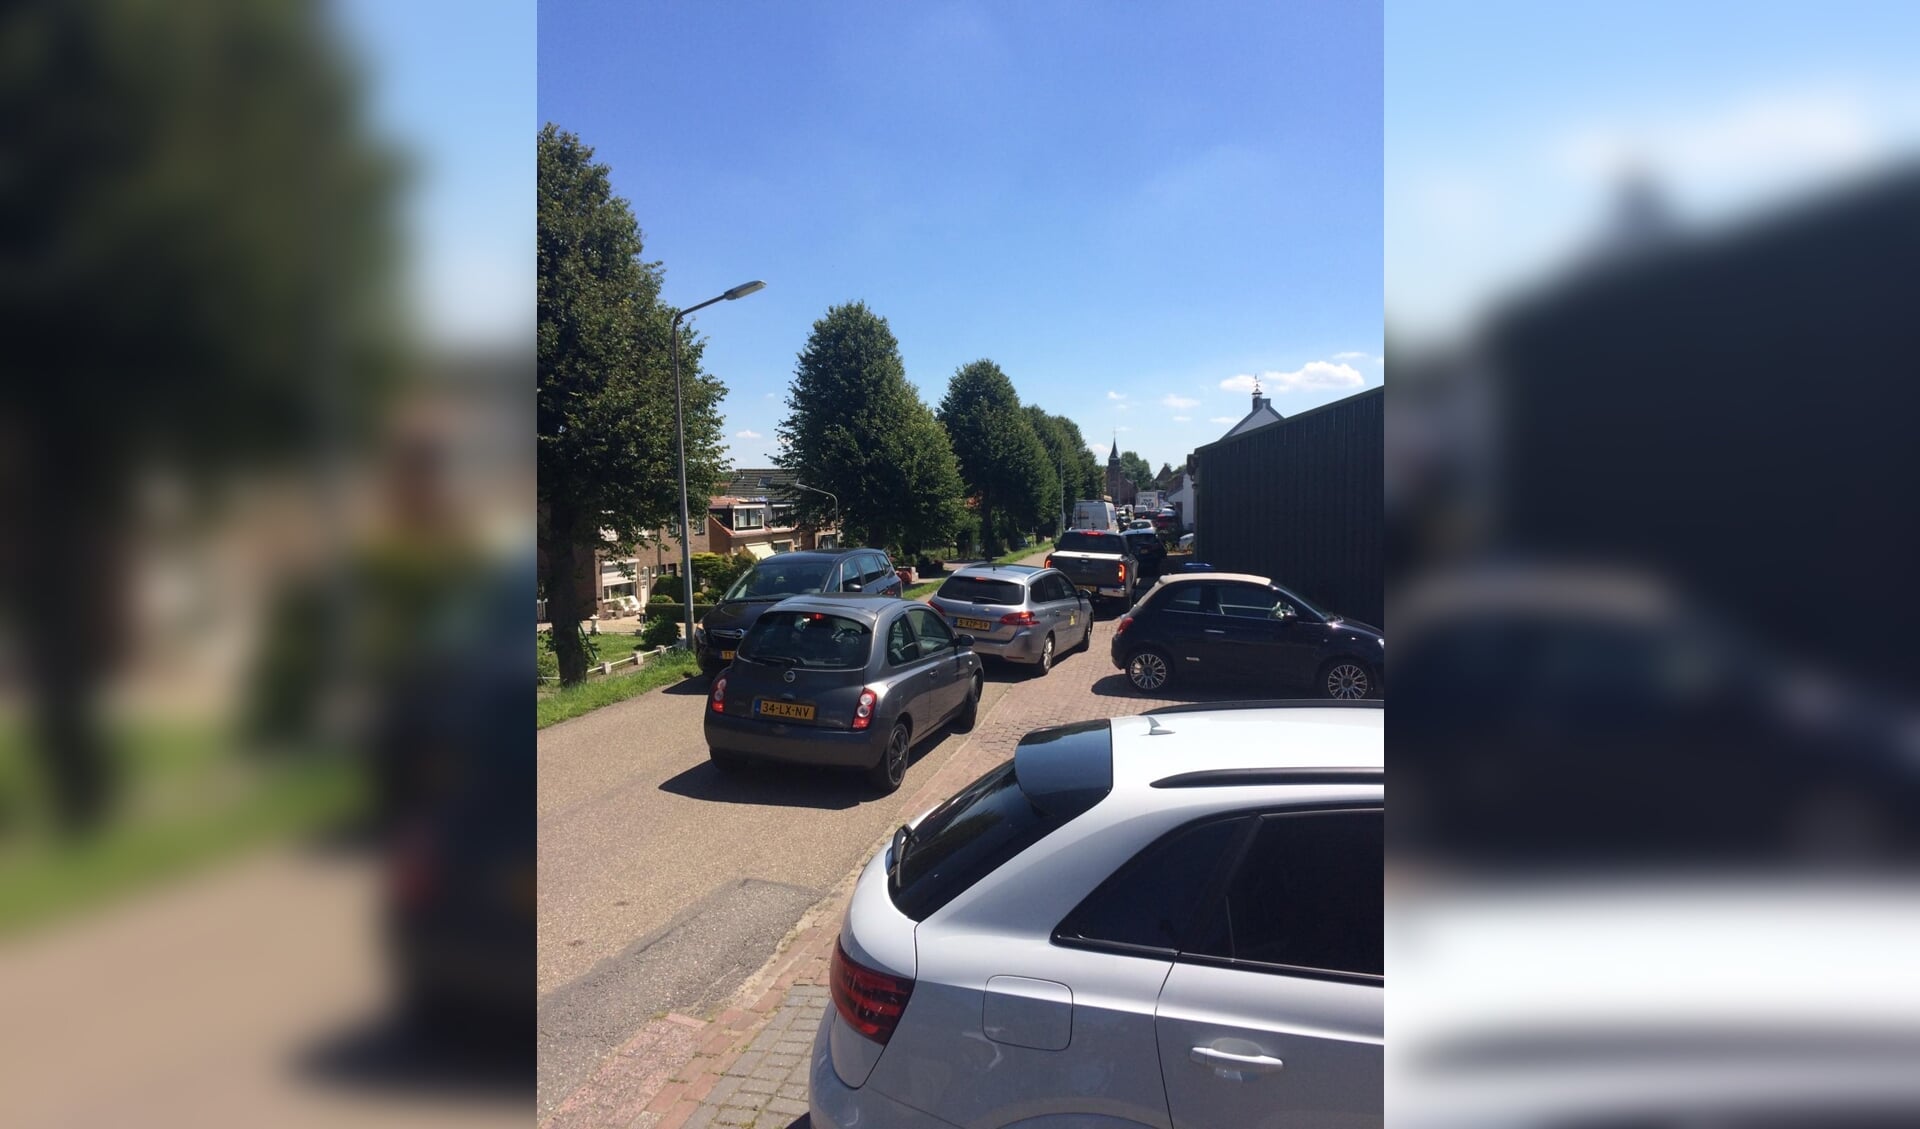 Complete chaos in Achthuizen afgelopen maandag (Foto's: Dorpsraad).